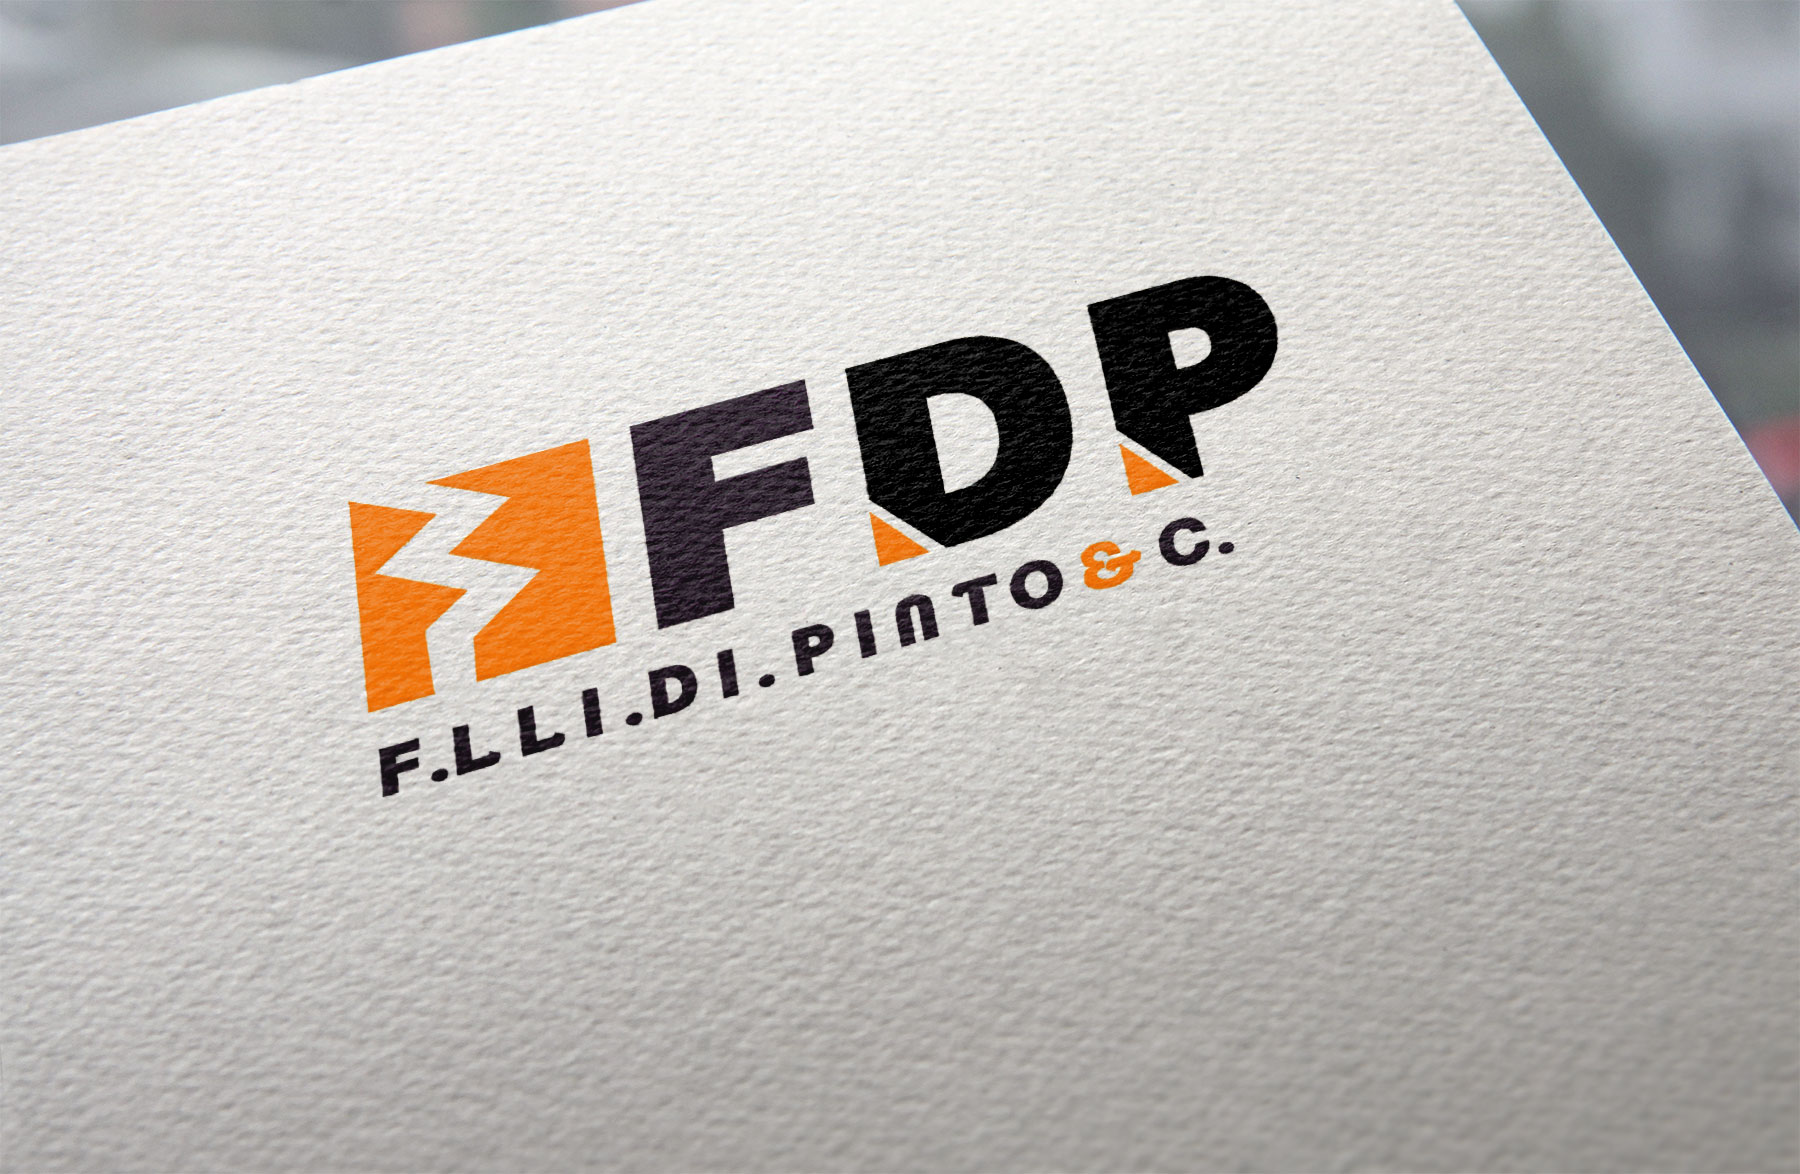 FDP – Fratelli Di Pinto